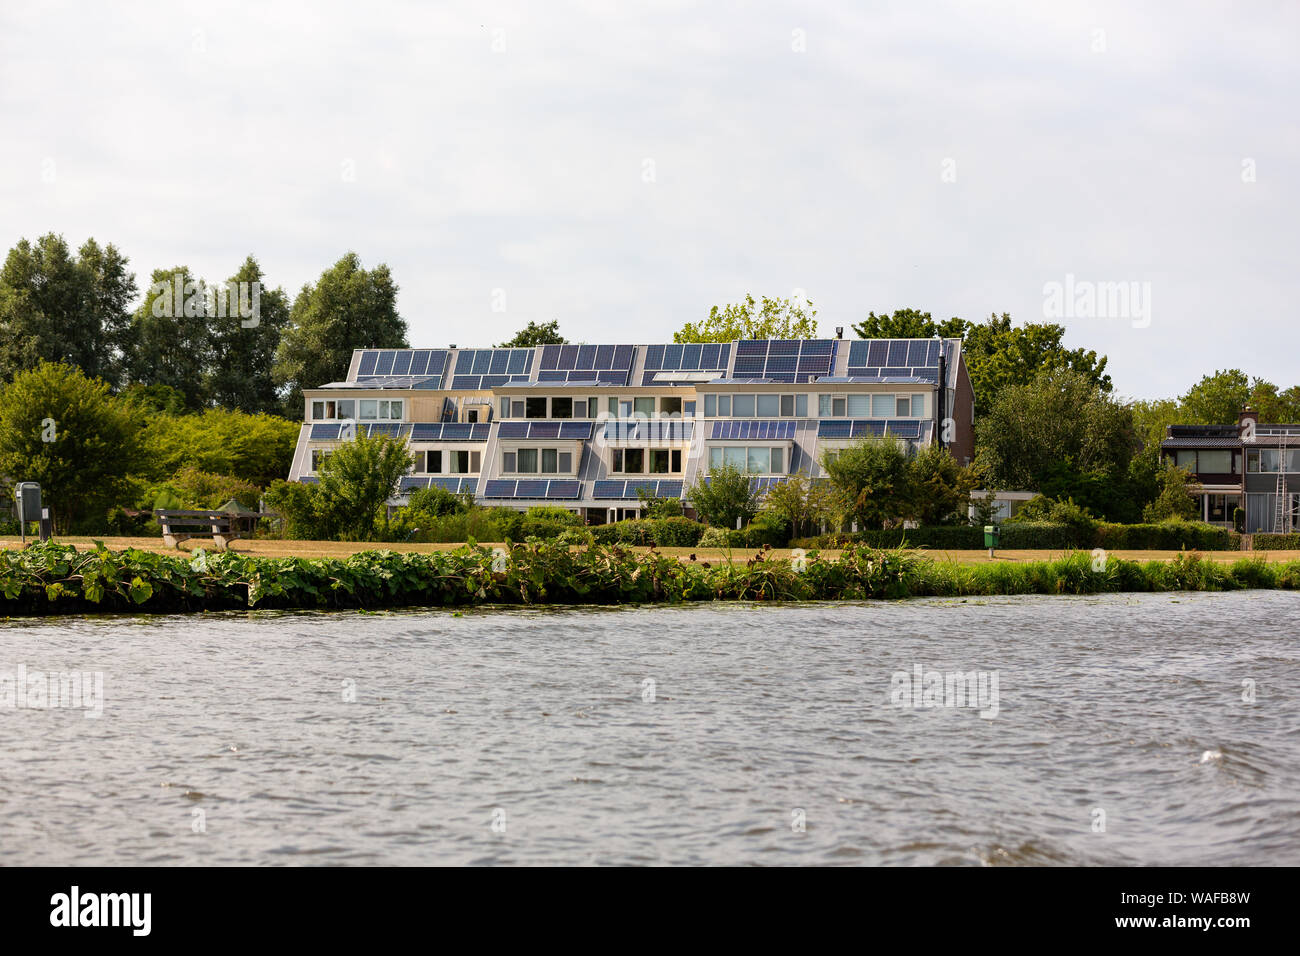 Erzeugung elektrischer Energie durch Solarzellen auf dem Dach der 6 Häuser in Leiden in den Niederlanden. Stockfoto